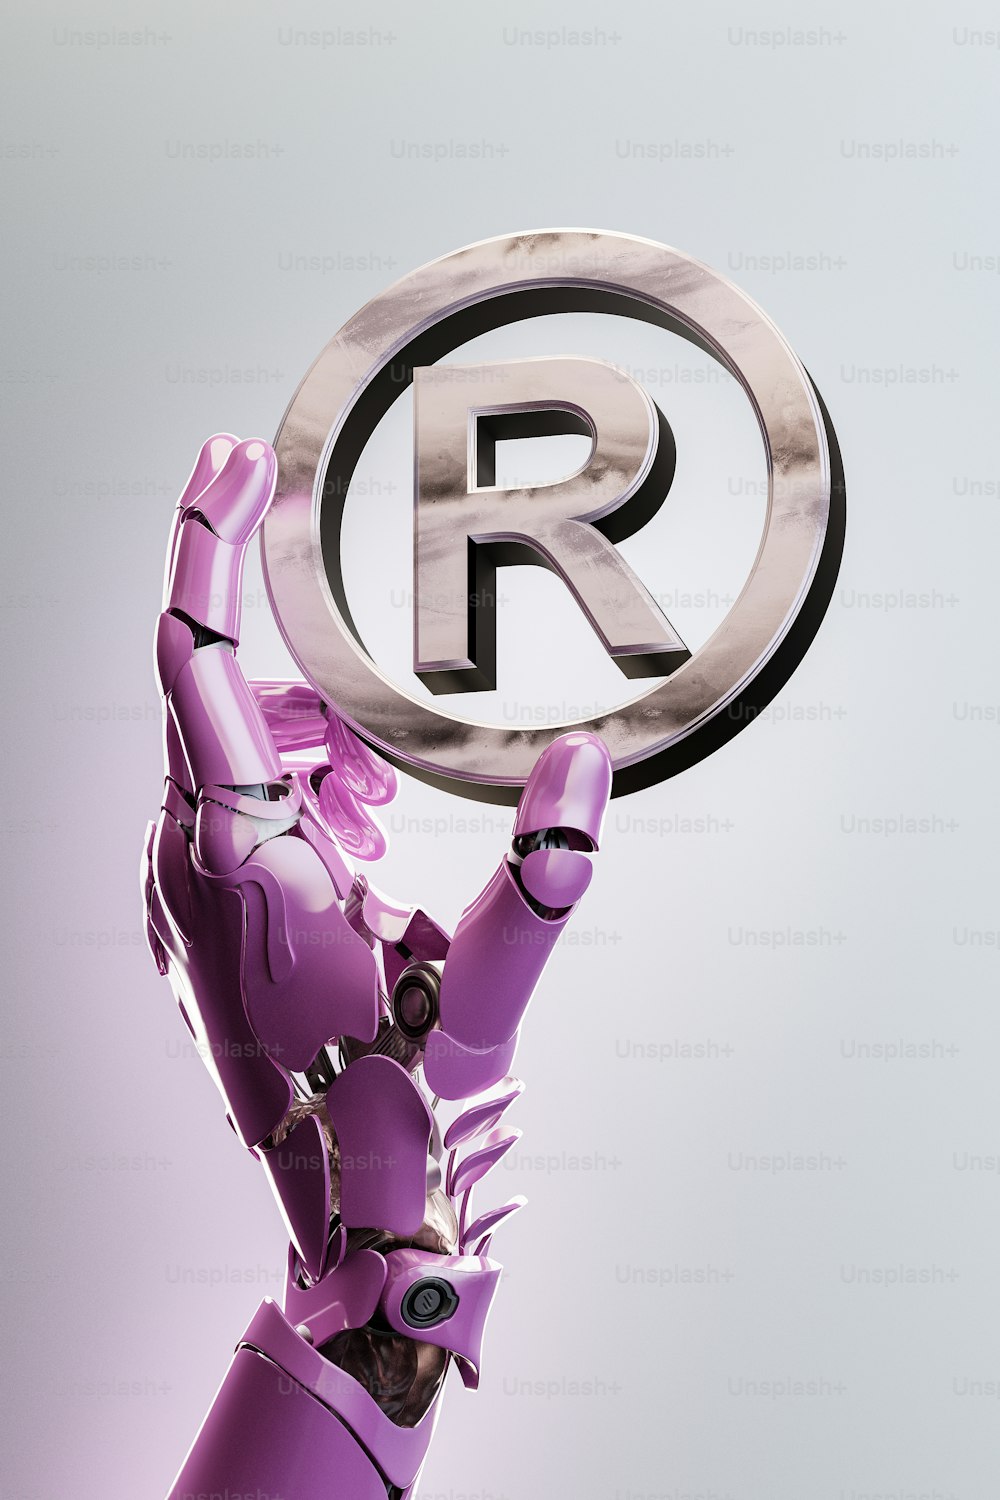 Rの��文字が書かれた看板を掲げるロボット